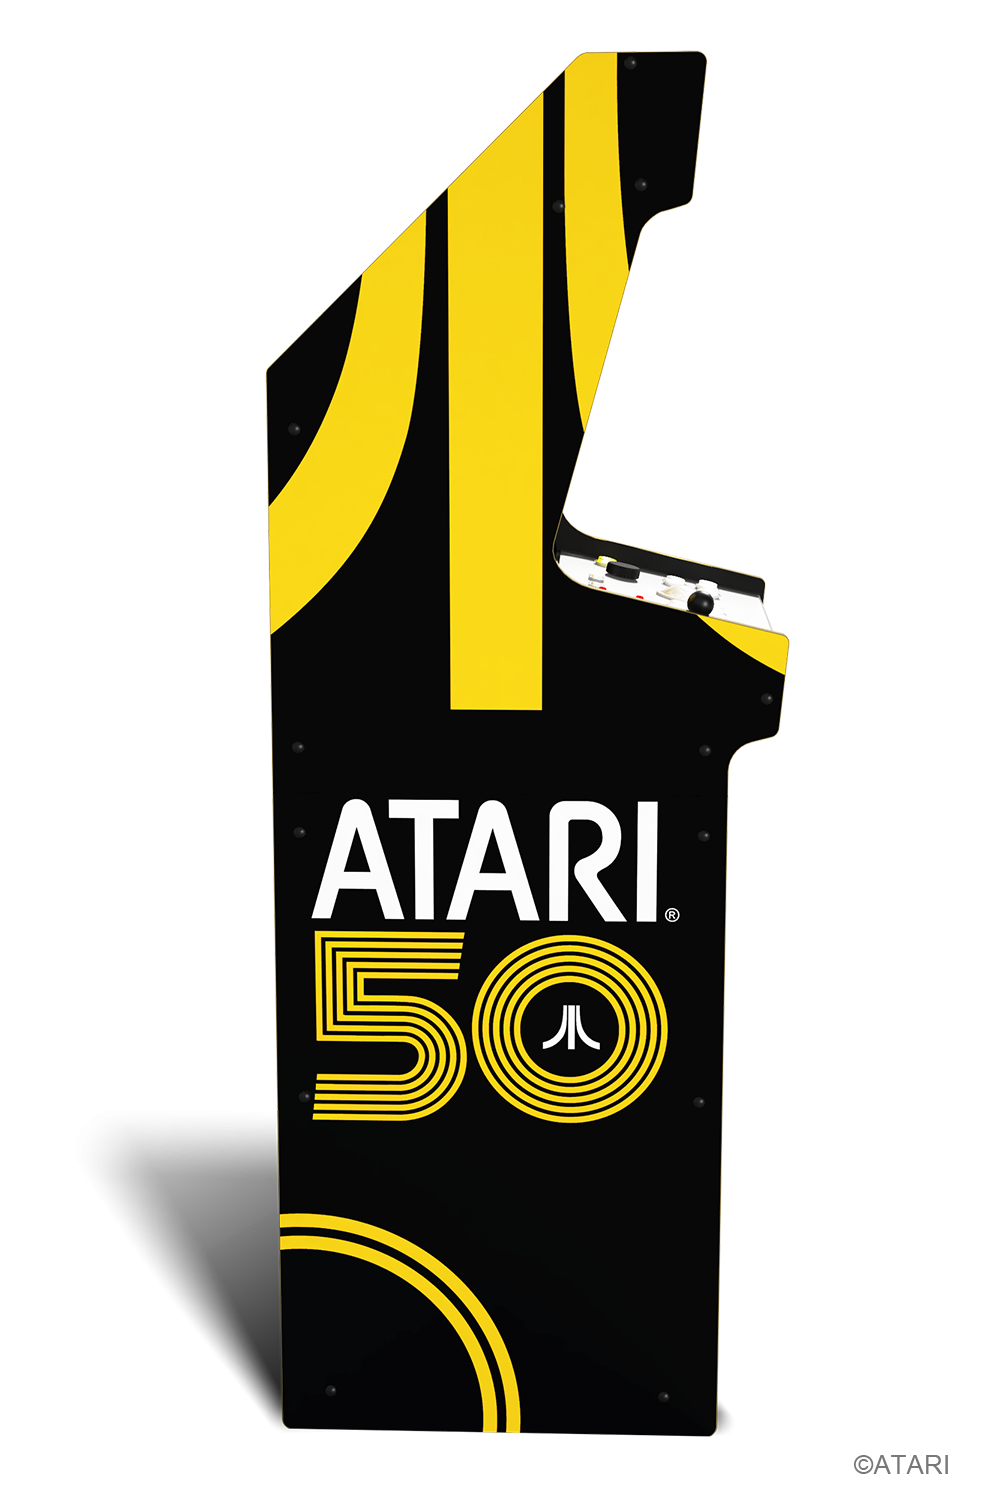 ARCADE 1 UP ATARI 50-årsjubileum DELUXE ARCADE MACHINE - 50 SPEL I 1